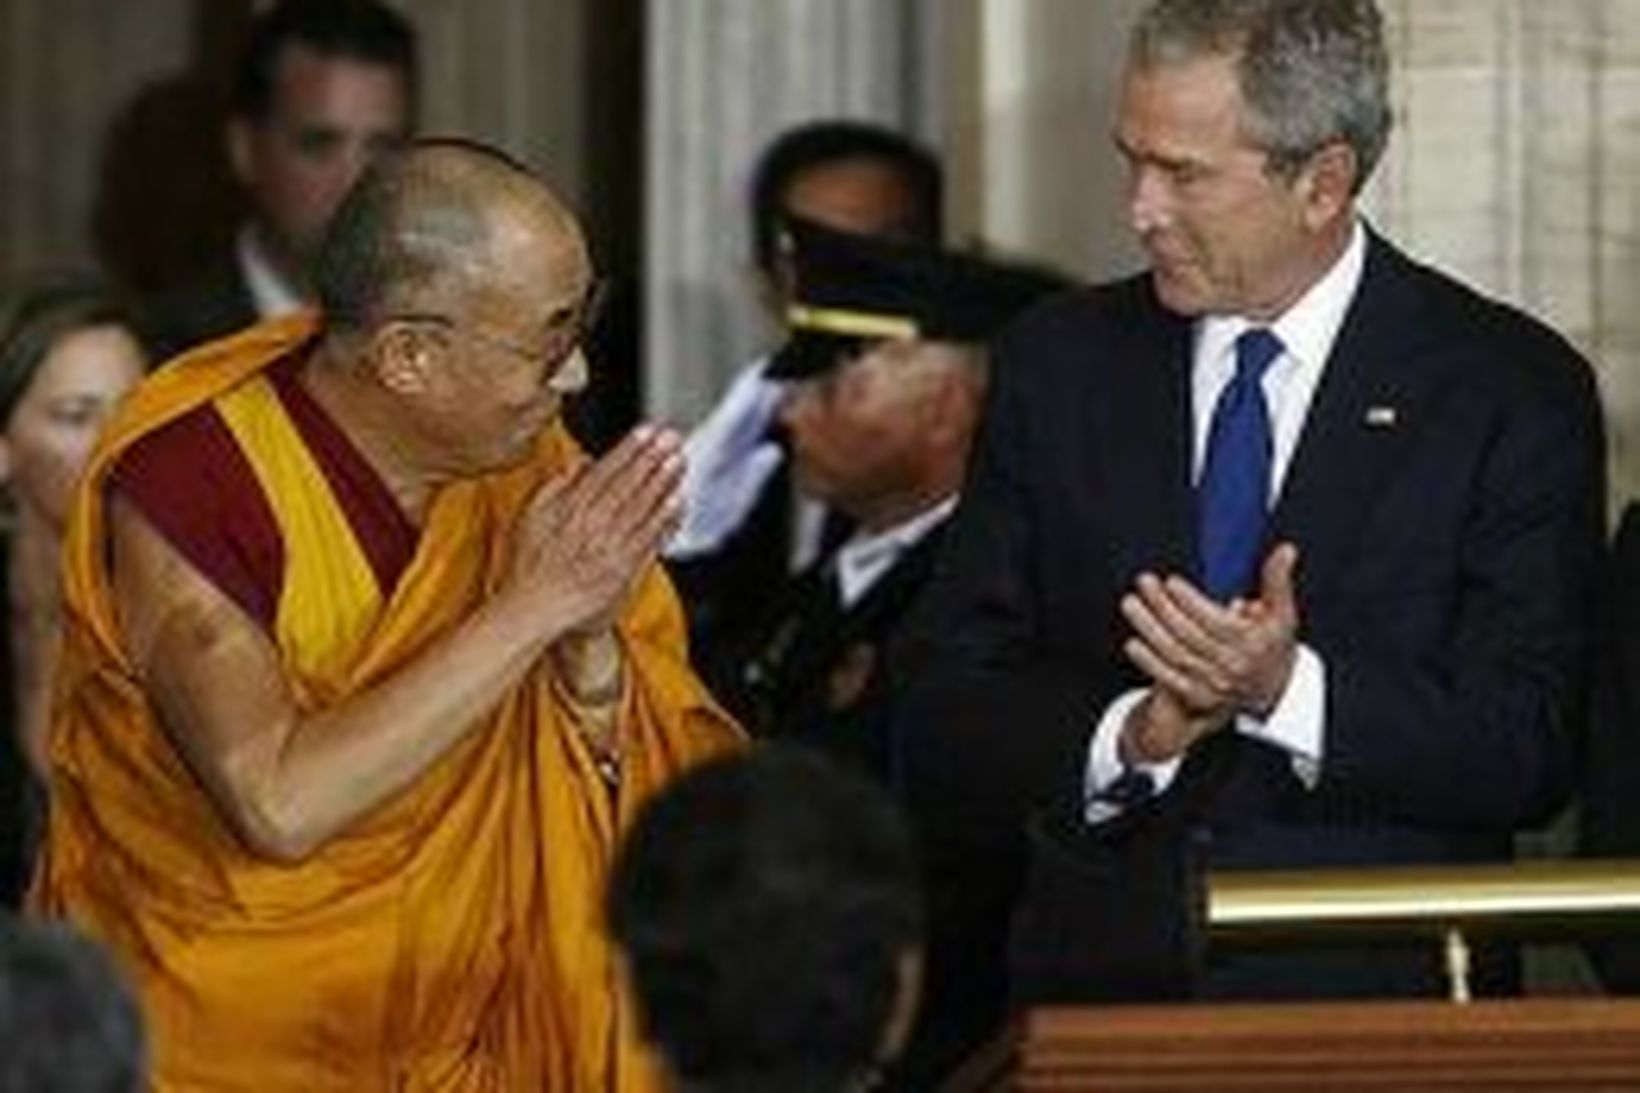 Dalai Lama fundaði tvisvar með Bush í óþökk Kínverja.